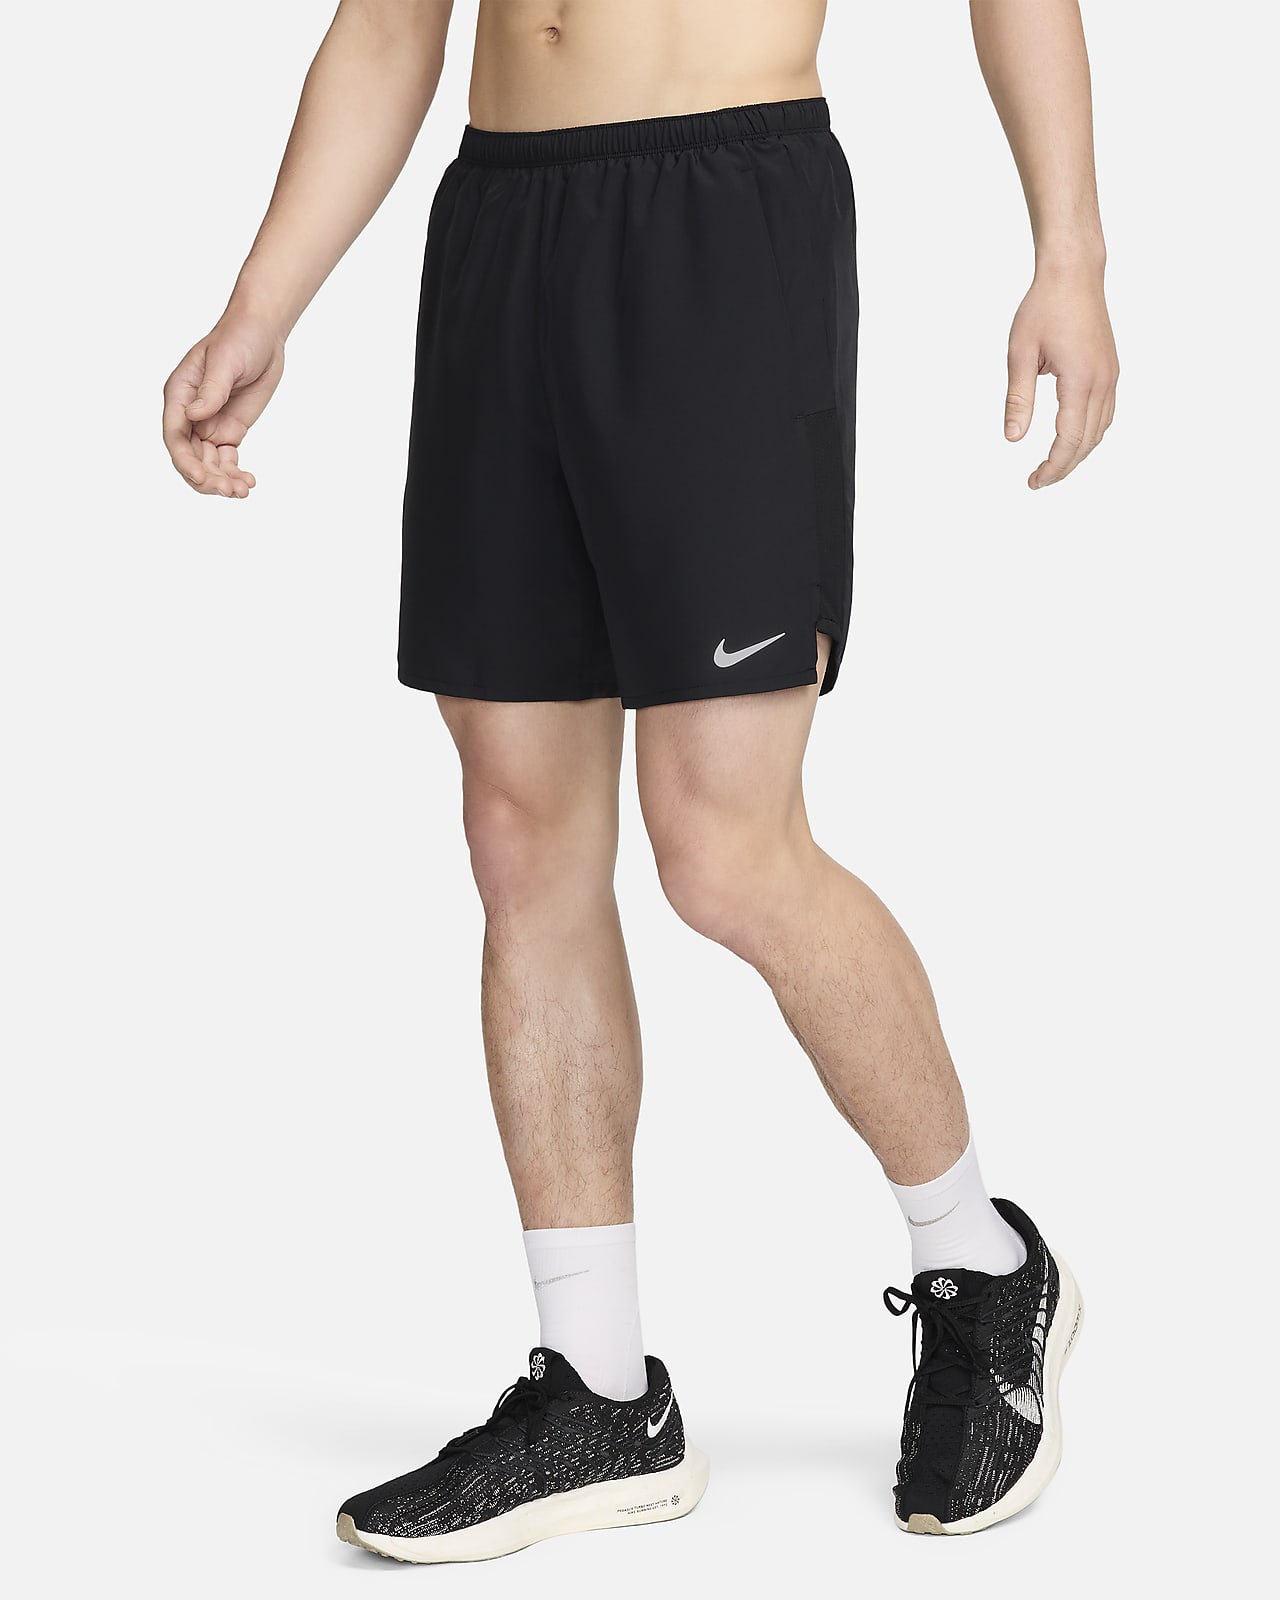 nike challenger men's running shorts